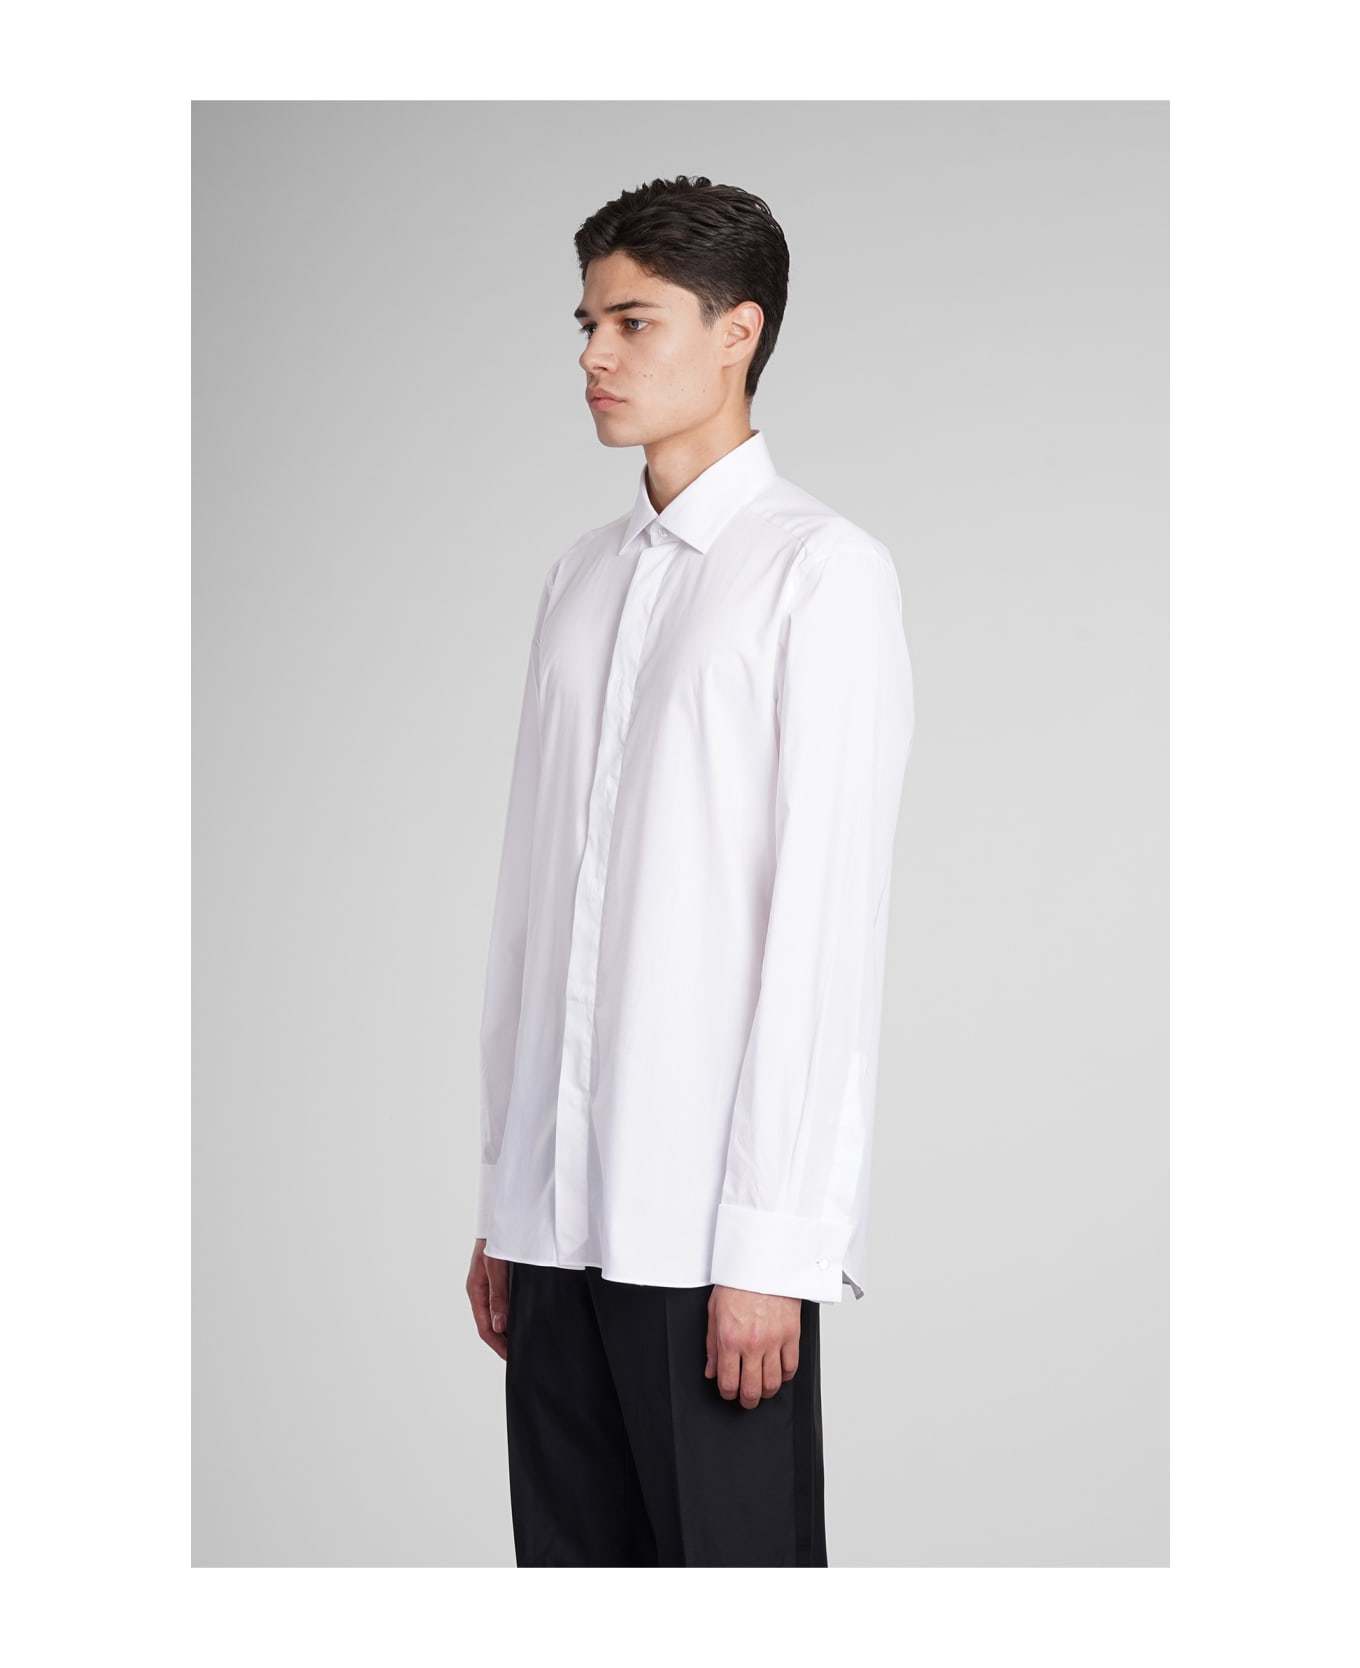 Zegna Shirt In White Cotton - white